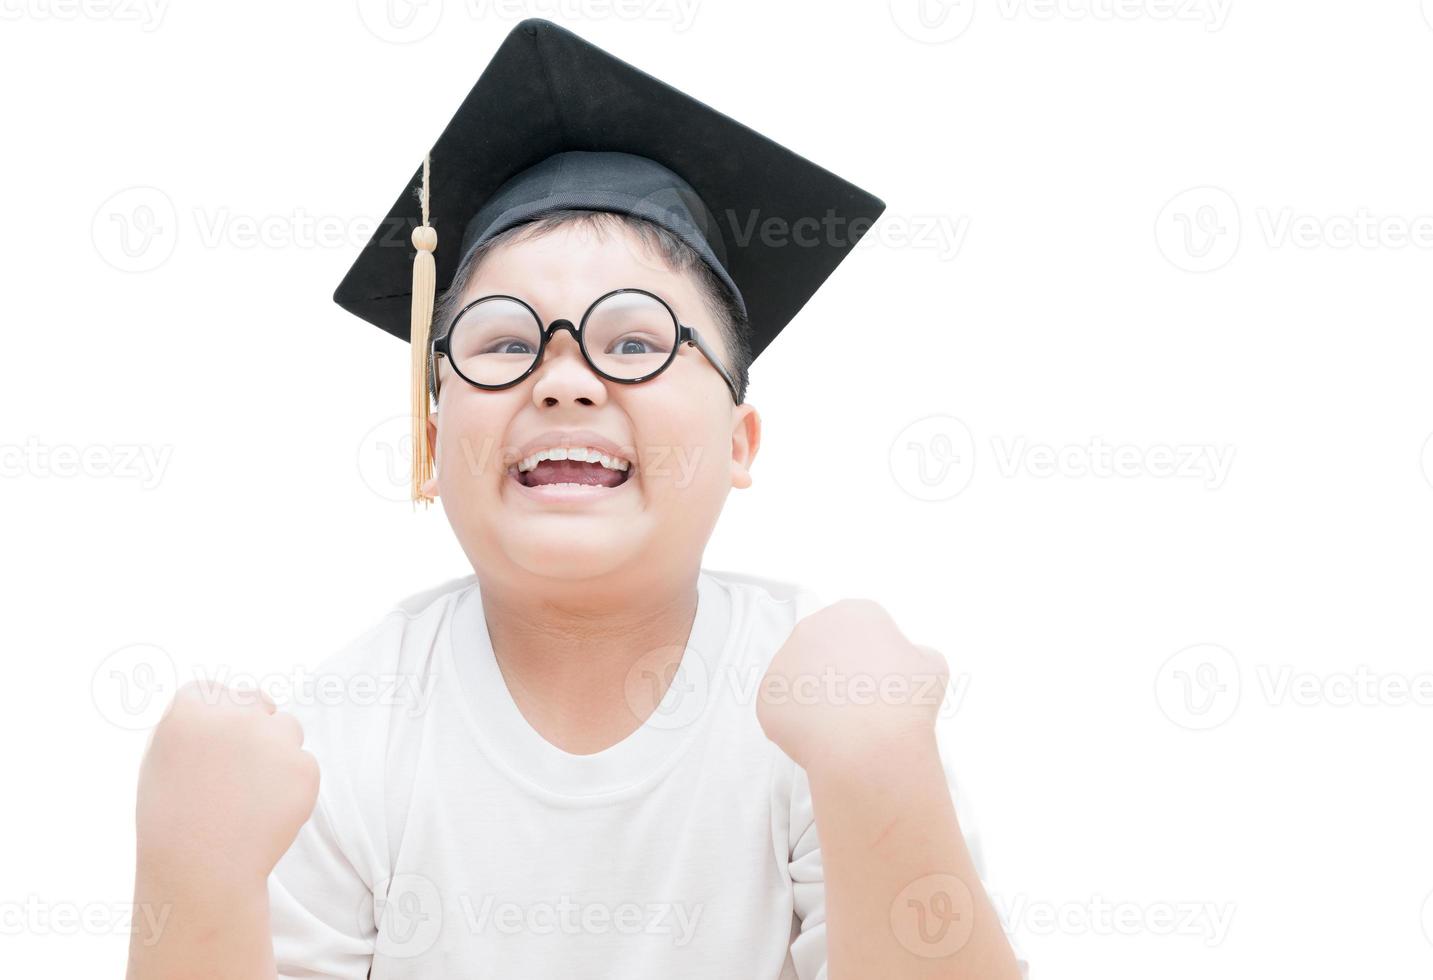 content et très heureux asiatique école enfant diplômé avec l'obtention du diplôme casquette photo